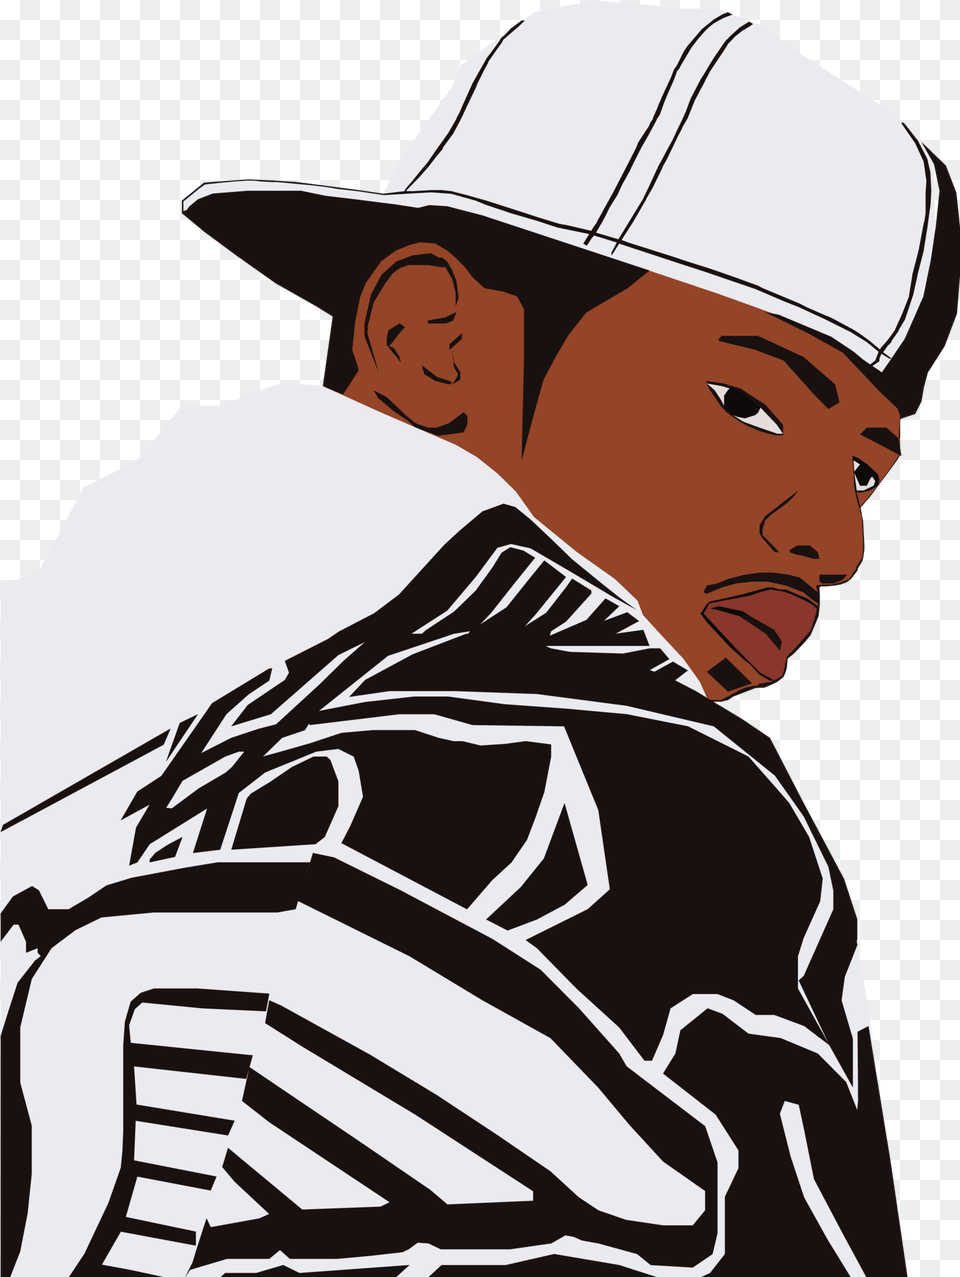 Fabolous Rapper Music Remix Hip Hop Rapper Cartoon Fabolous There Is No Competition, Baseball Cap, Cap, Clothing, Hat Free Png Download